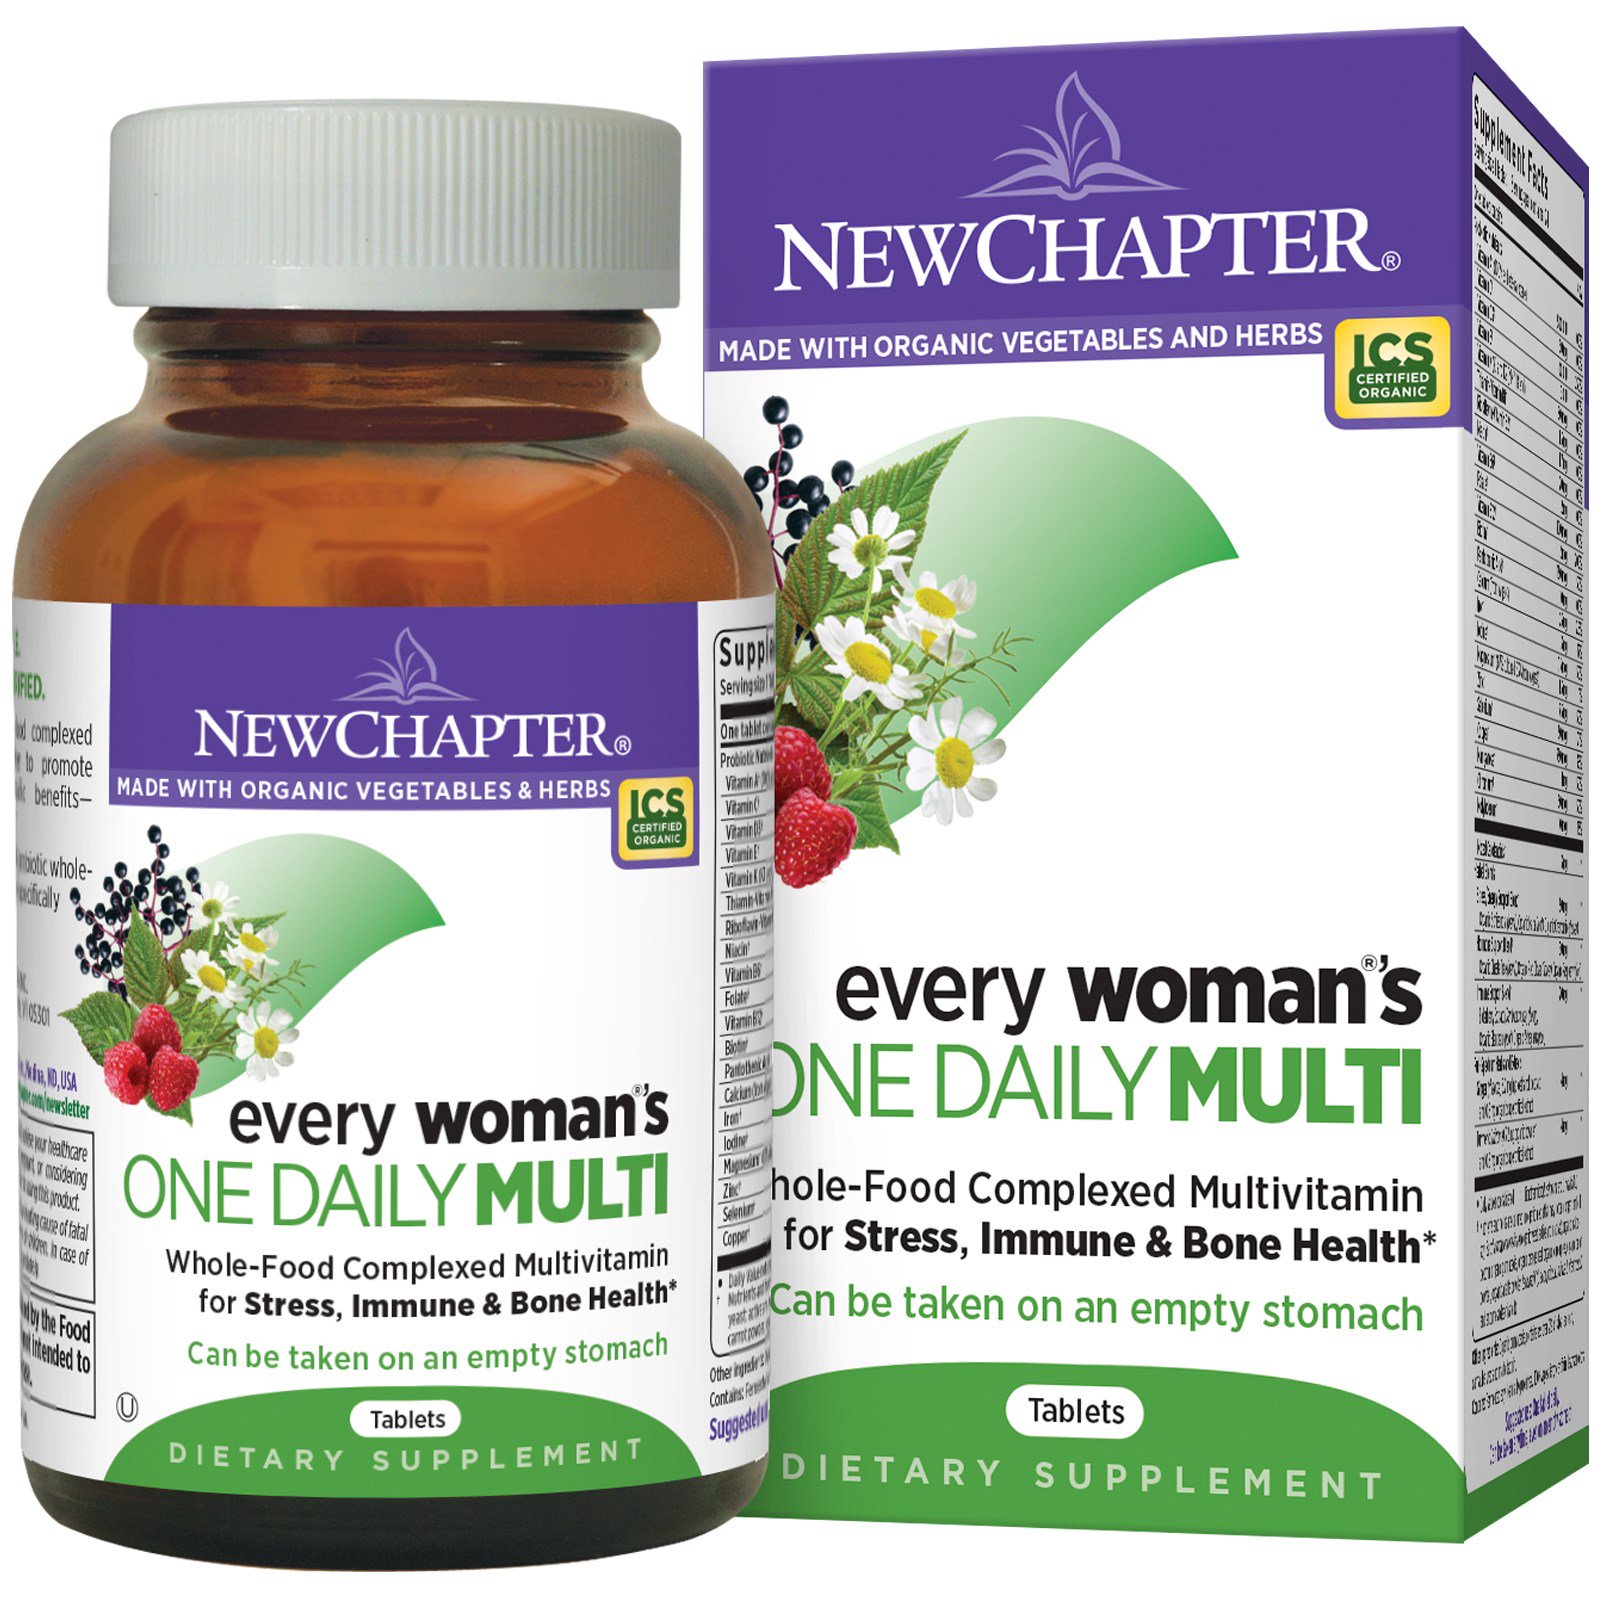 New Chapter, Мультивитамины для женщин «одна таблетка в день», 96 таблеток